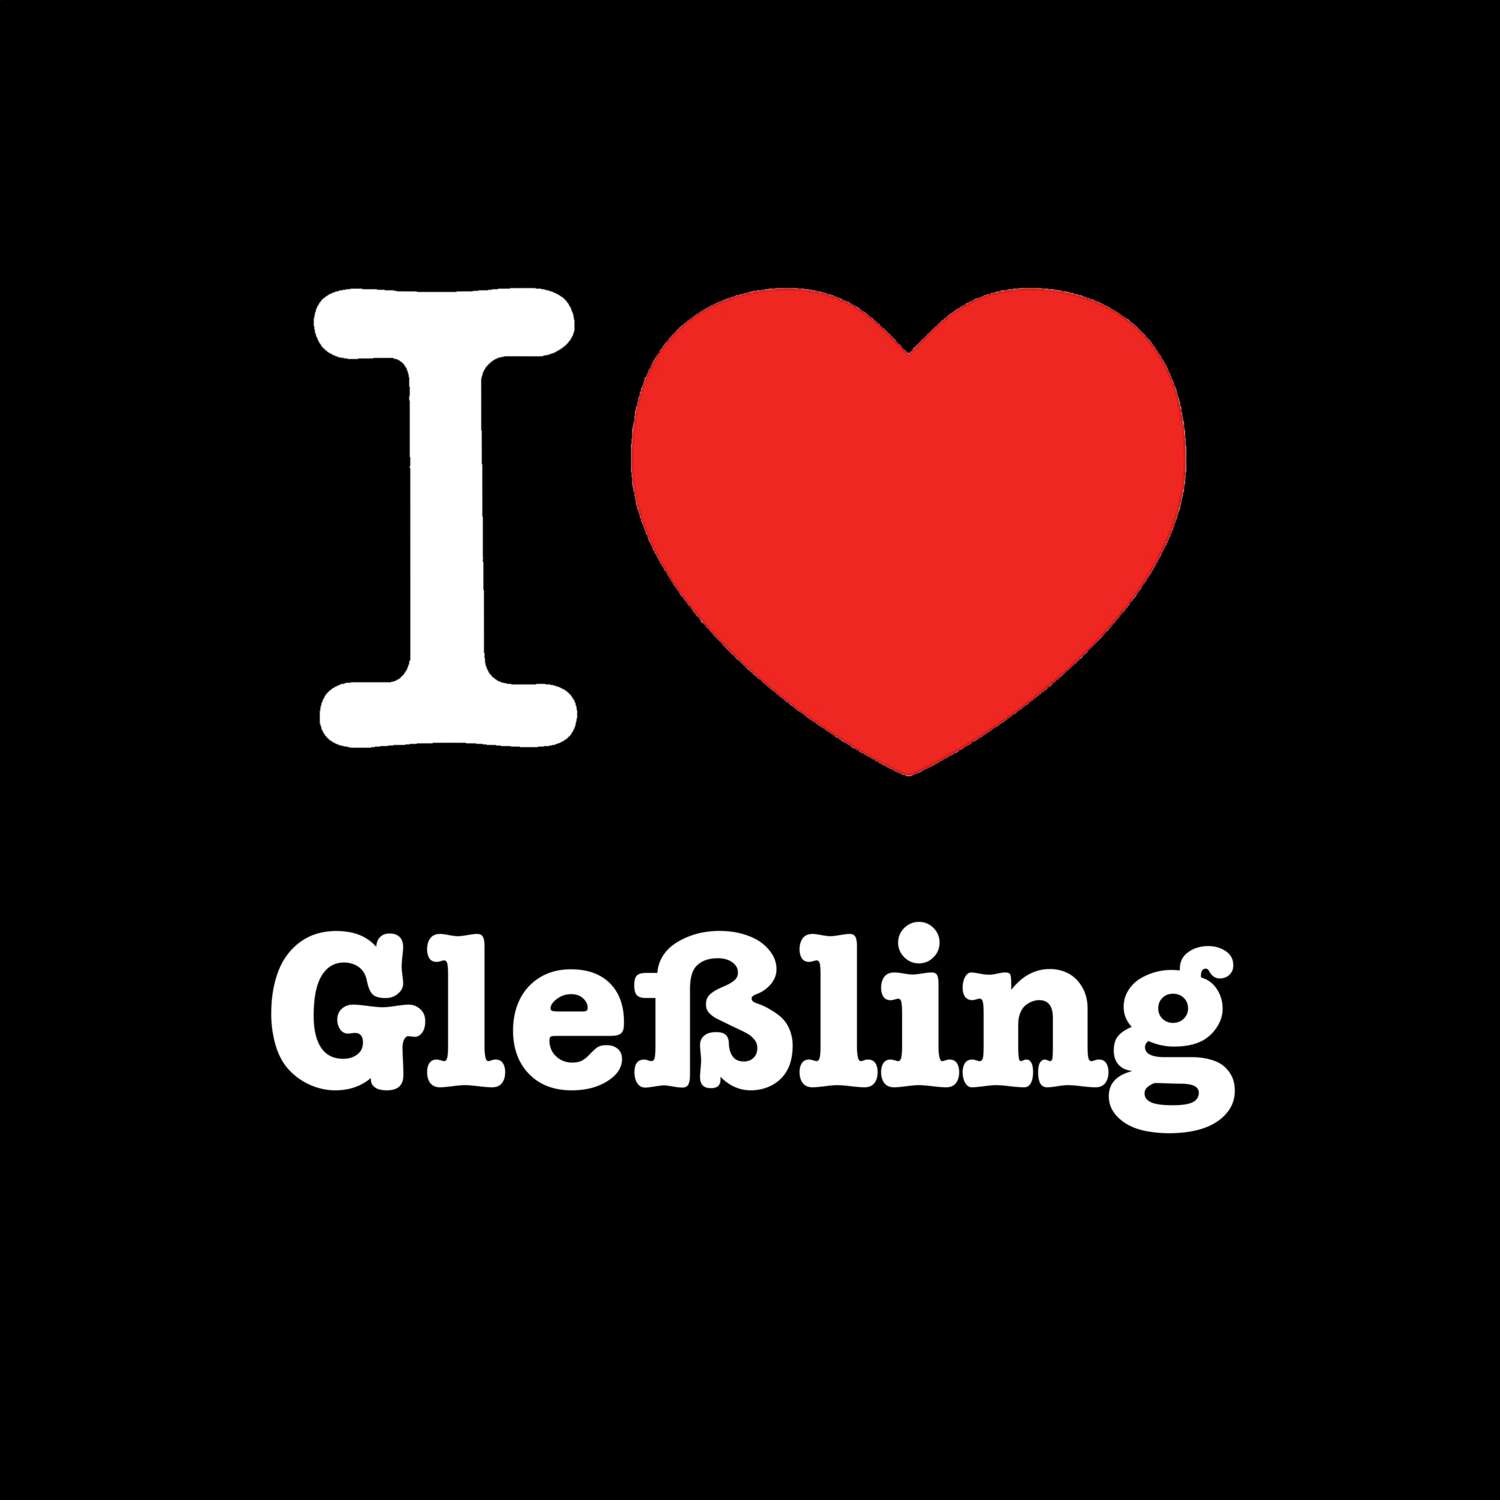 Gleßling T-Shirt »I love«